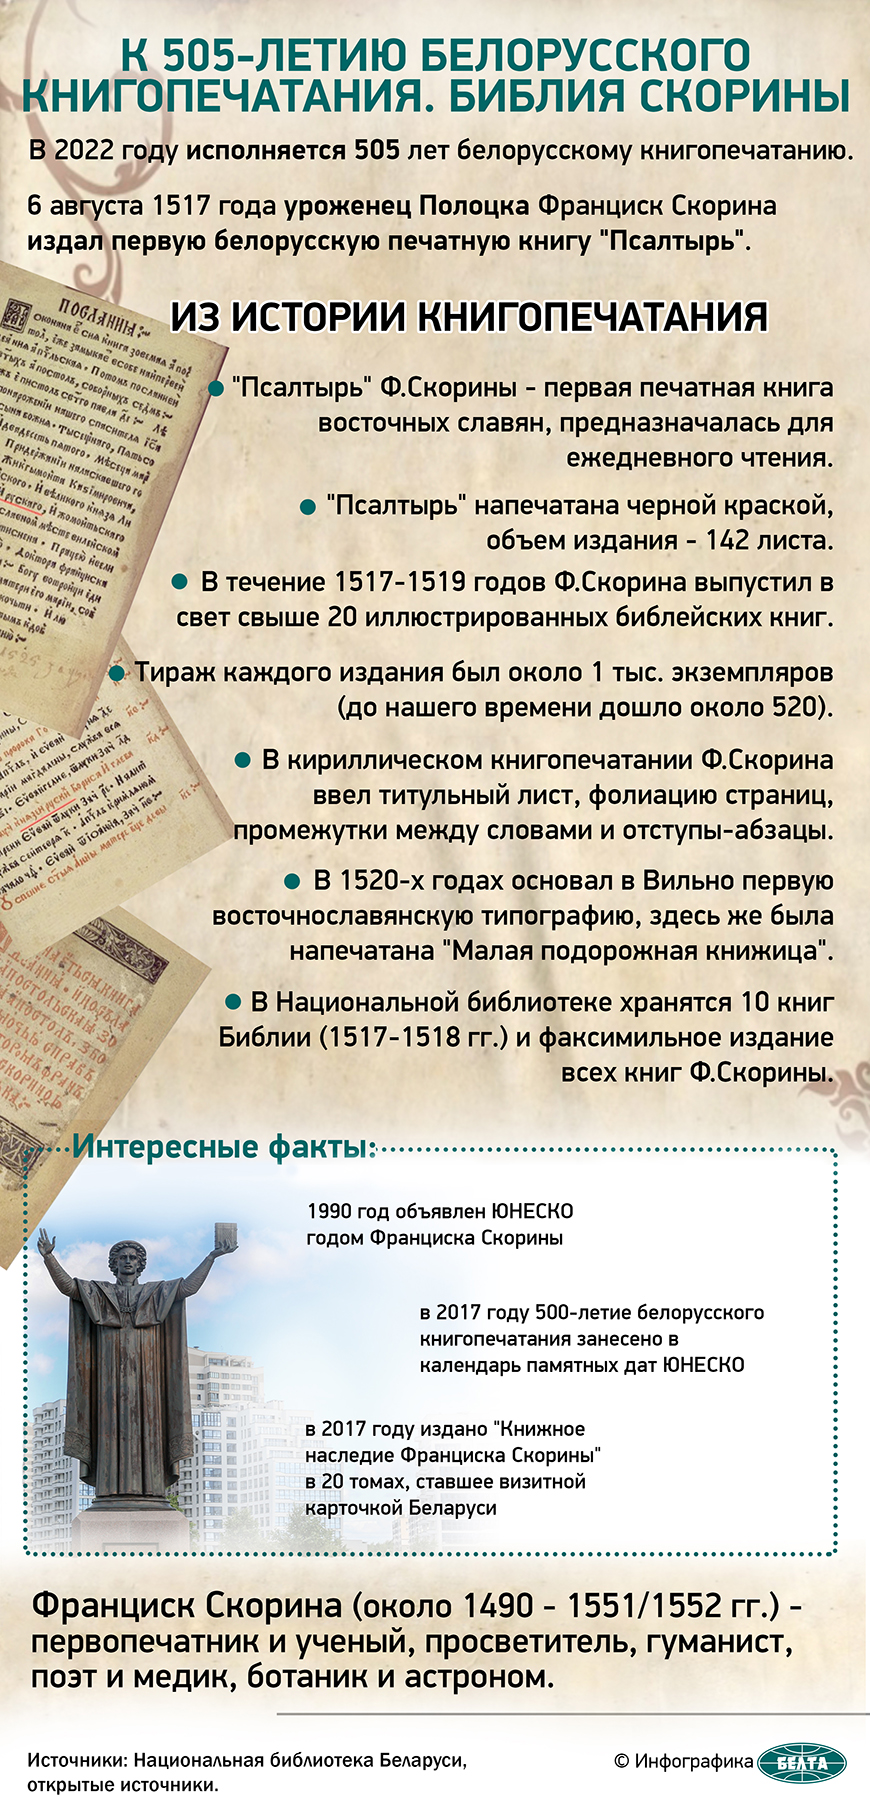 К 505-летию белорусского книгопечатания. Библия Скорины